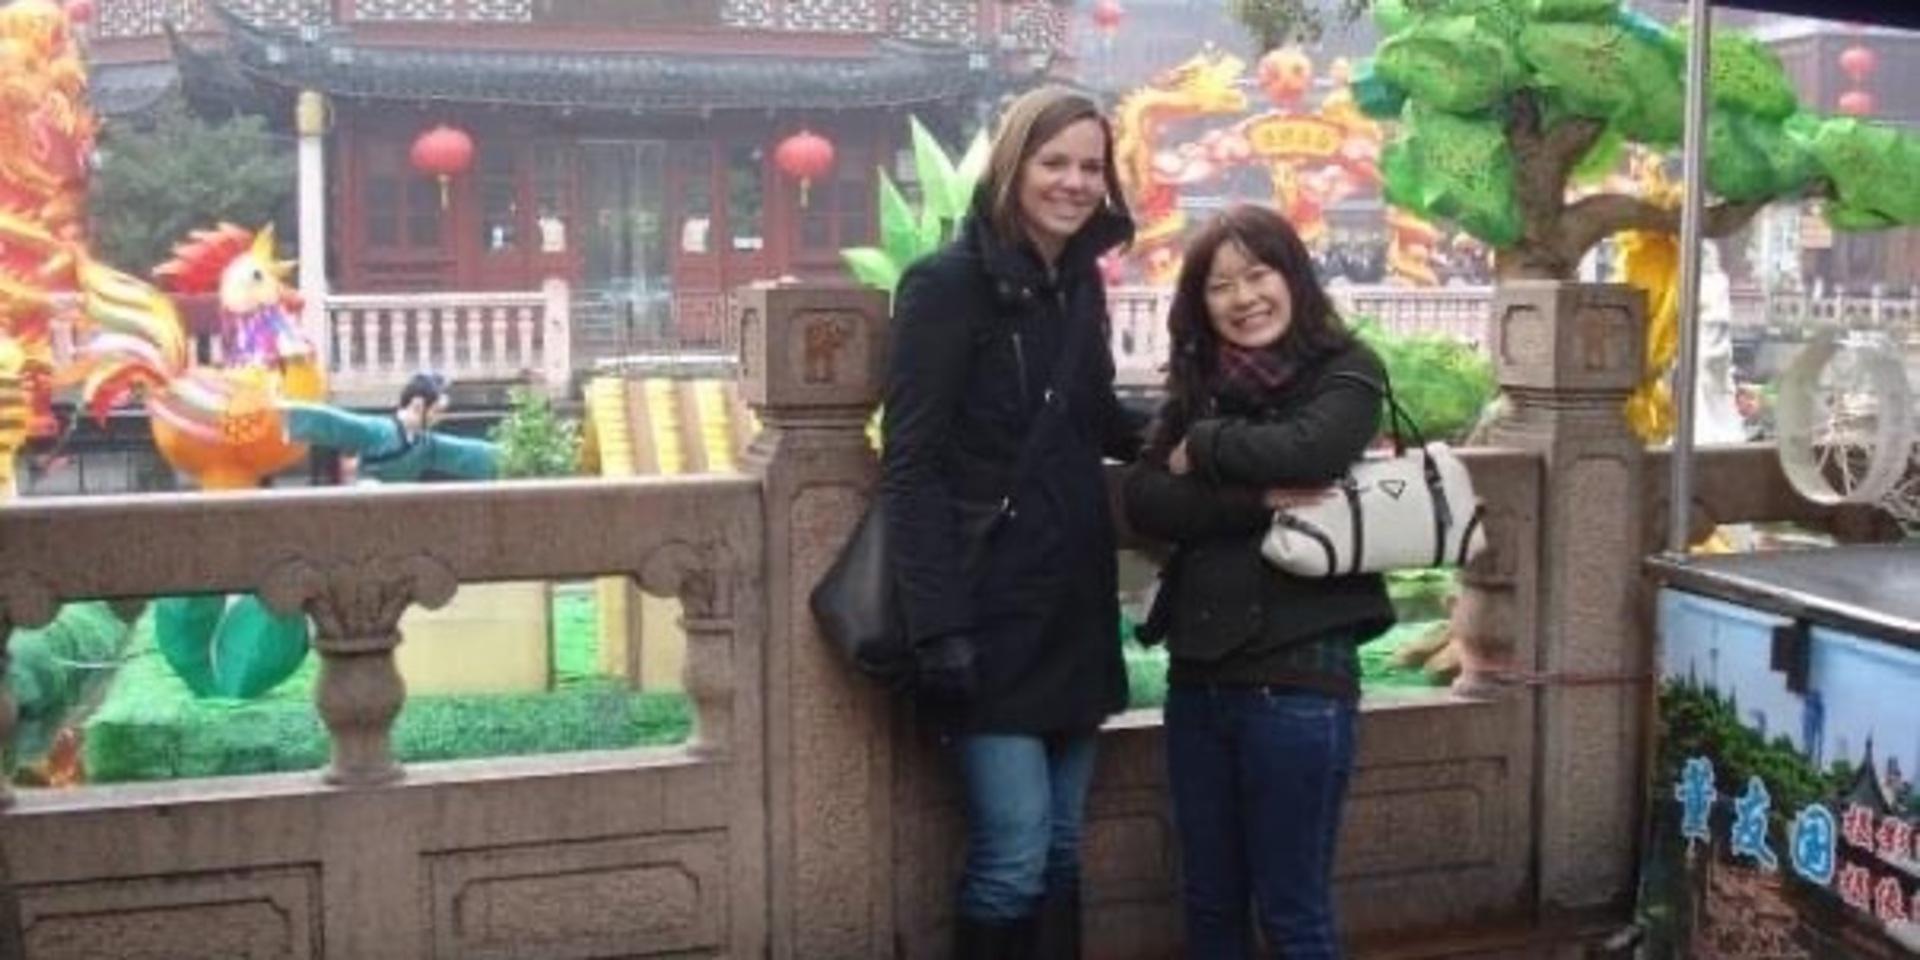 Alexandra på plats i Shanghai tillsammans med Megumi Suzuki, sin allra första bästa vän som hon lärde känna här under sin praktik i den kinesiska megastaden.